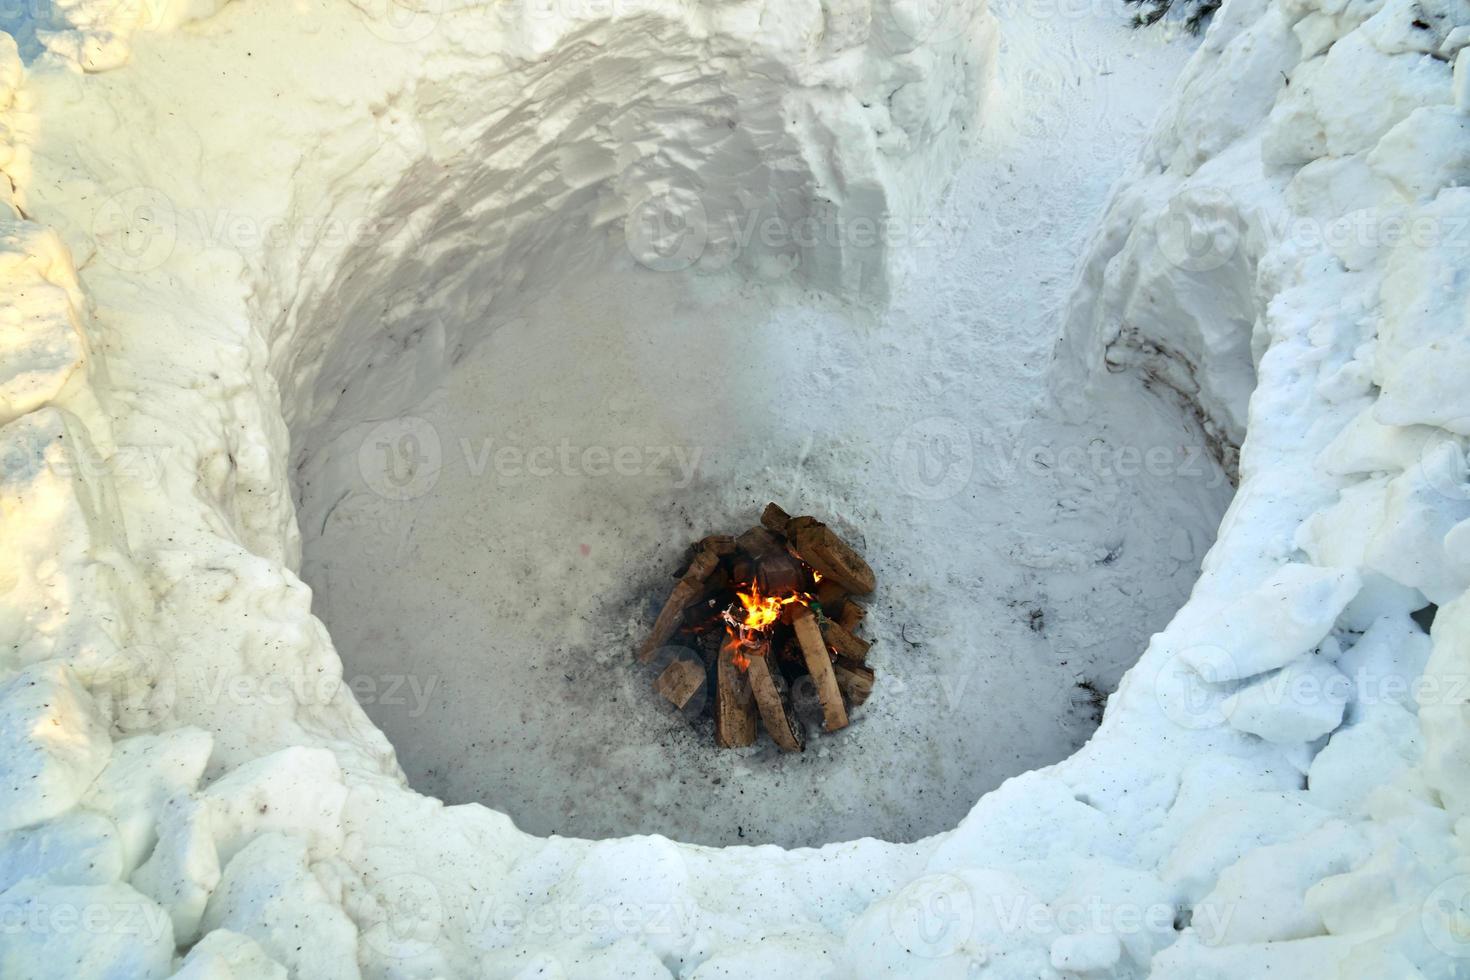 interieur van een iglo rond sneeuwhuis met een vreugdevuur erin foto